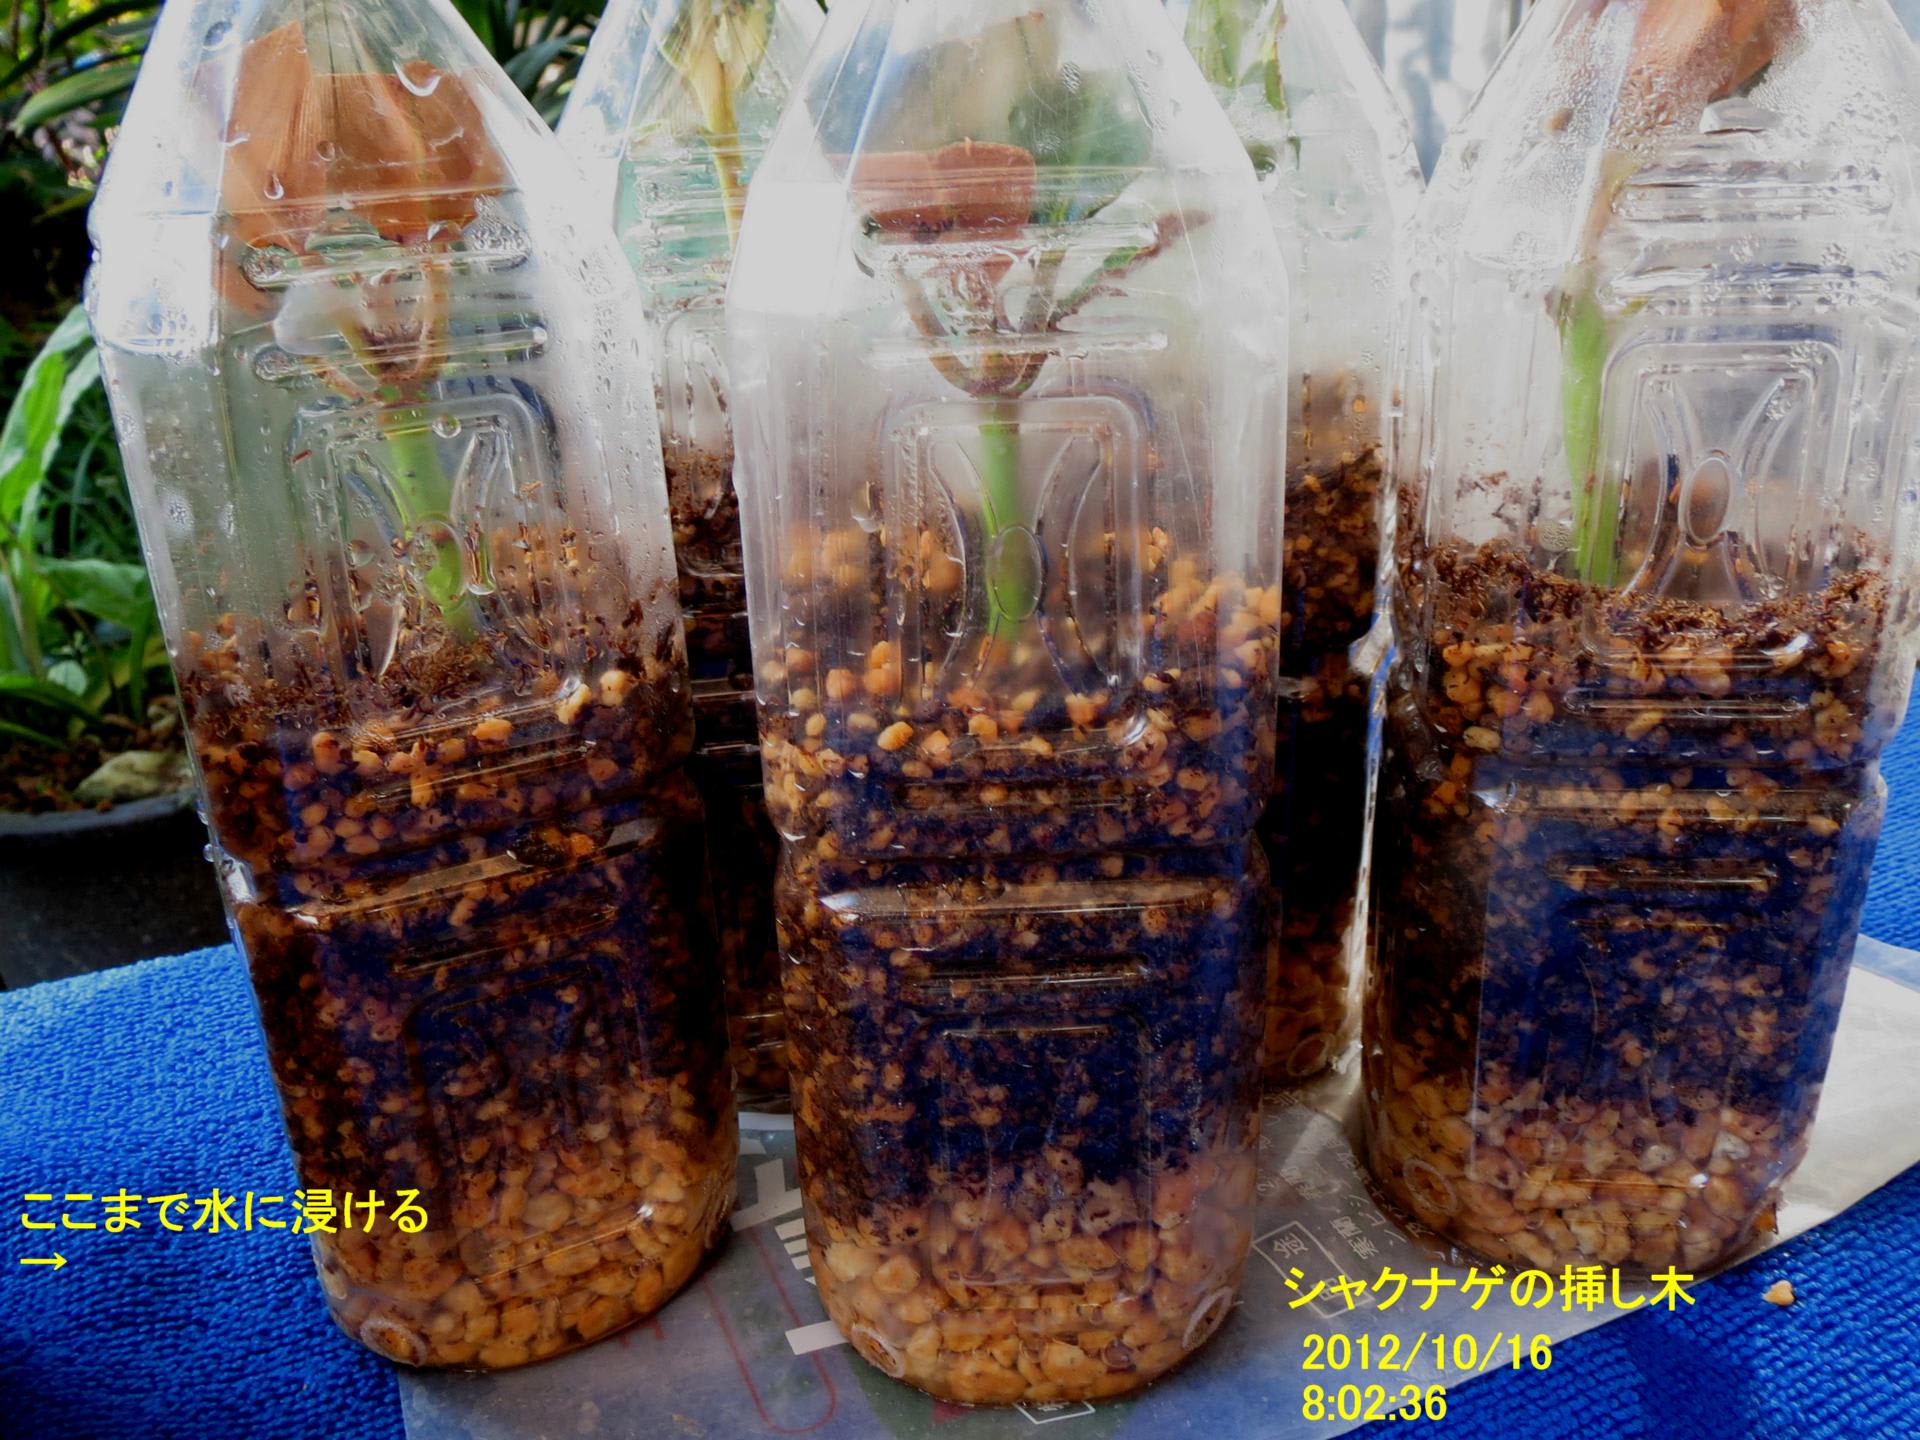 シャクナゲの挿し木適期 ハーモニー農法とは 安全で美味しい農産物つくり